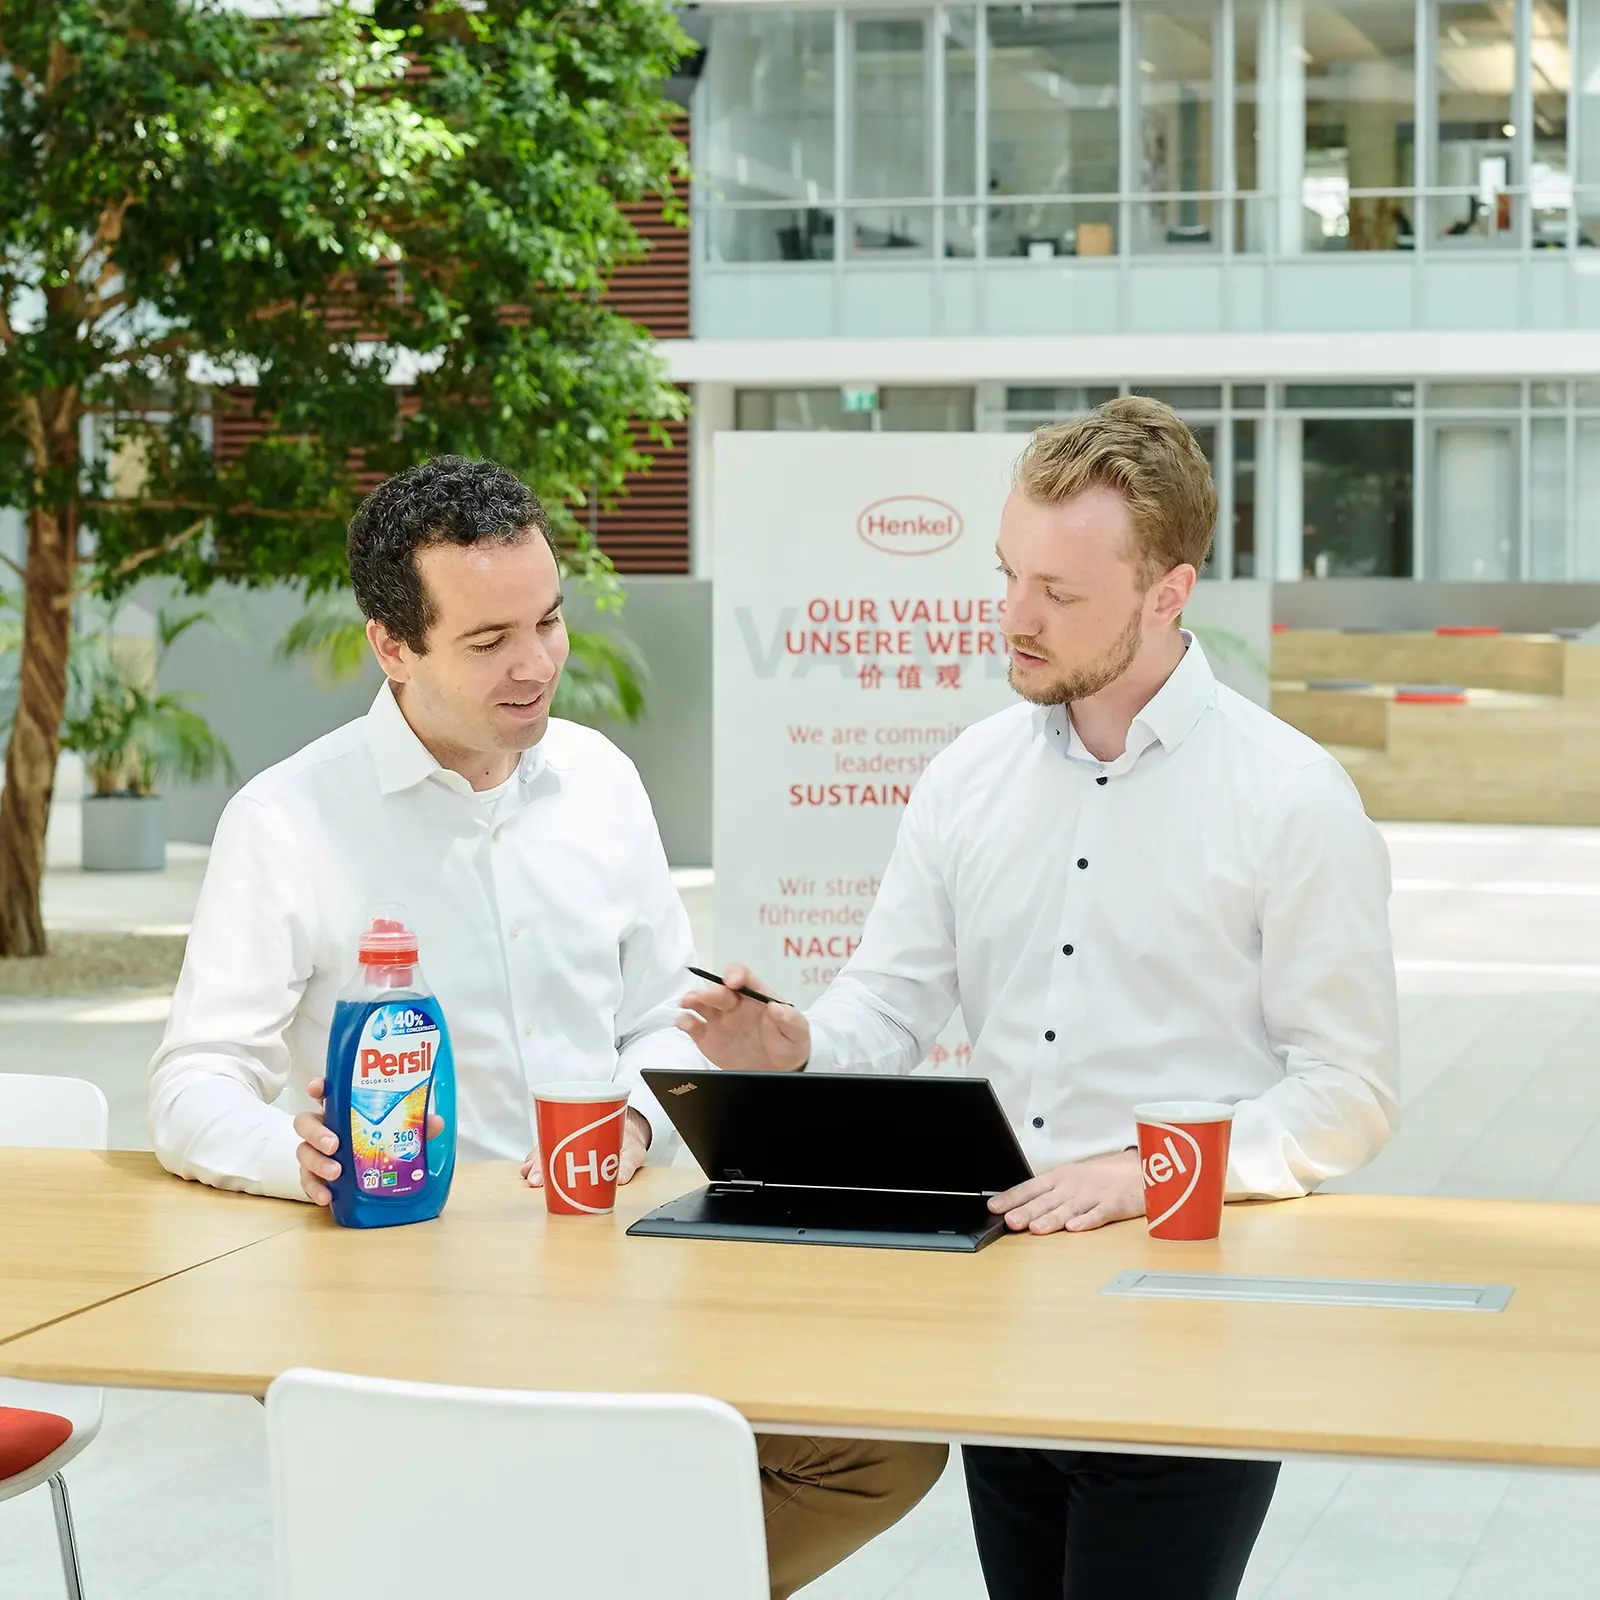 ผู้ชายสองคนยืนอยู่กับโต๊ะที่มีขวดผลิตภัณฑ์ Persilและแล็ปท็อปวางอยู่บนโต๊ะ